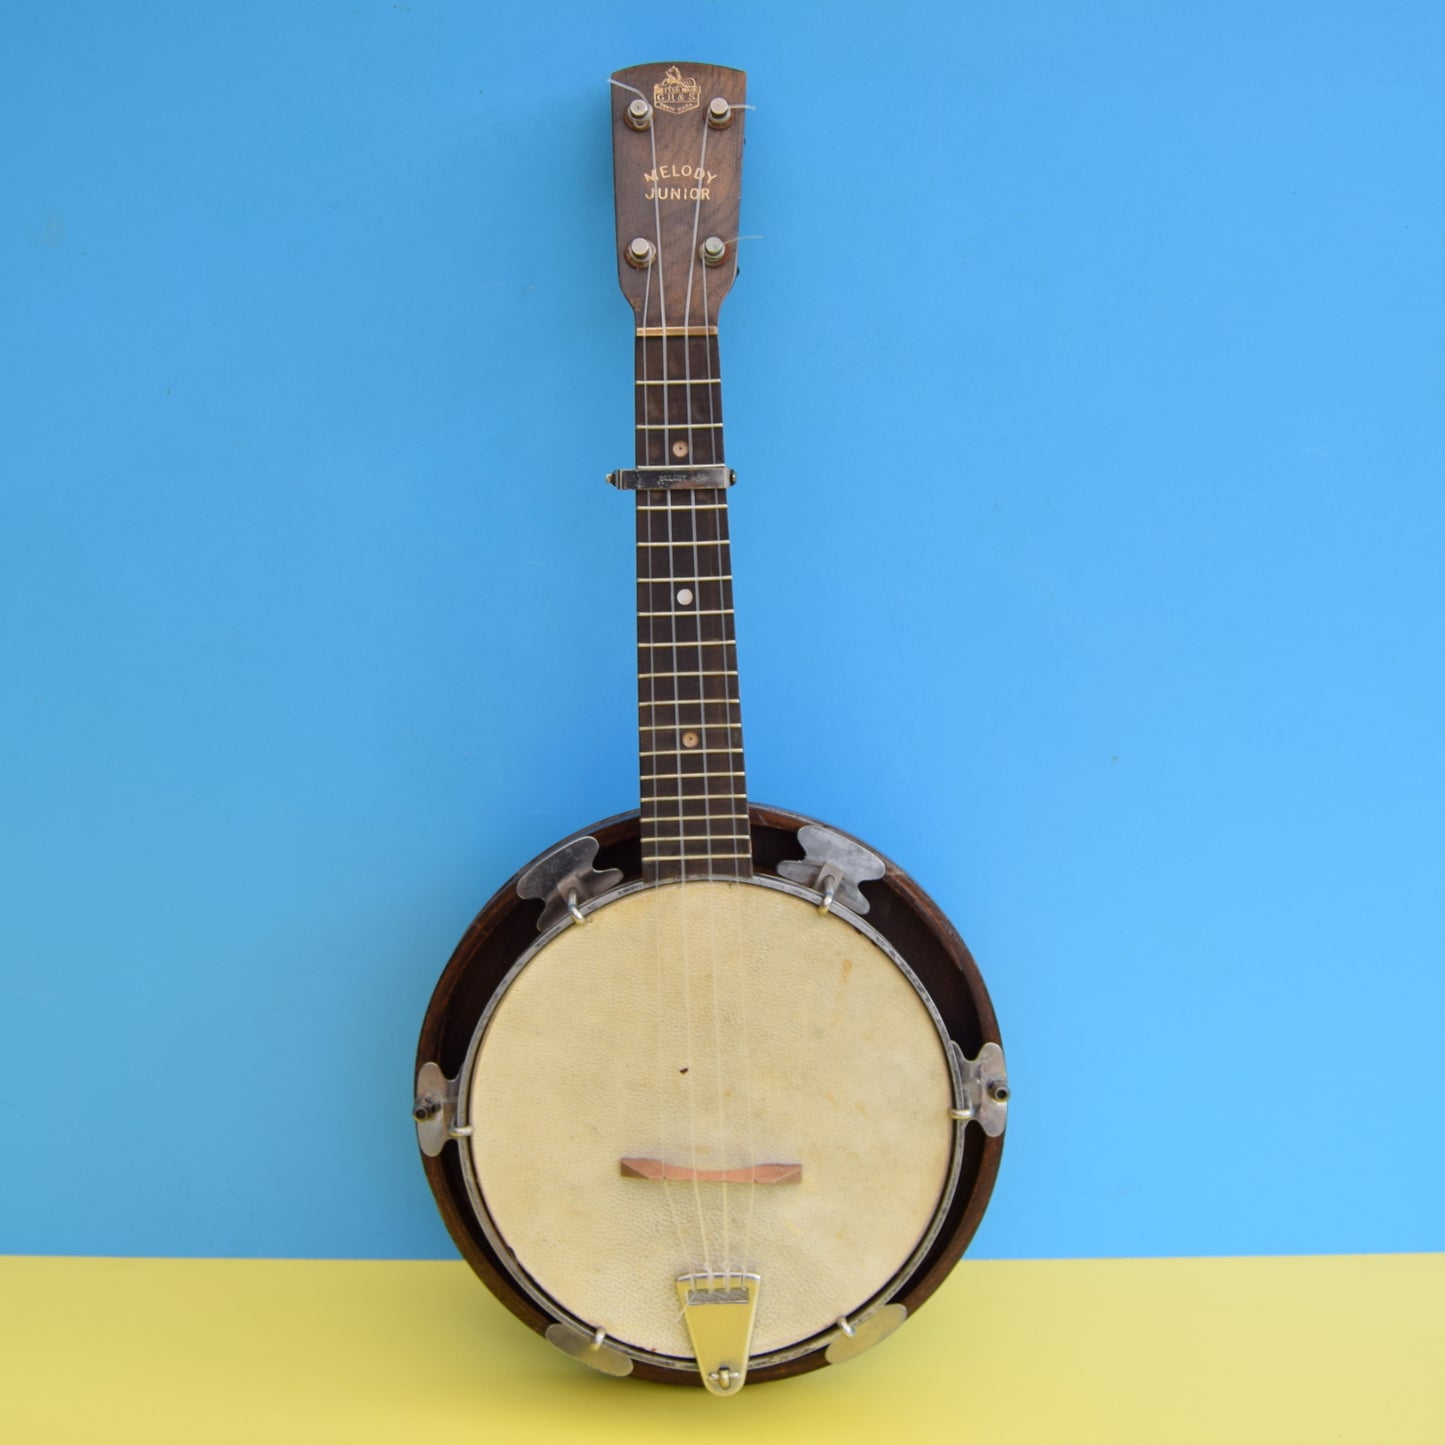 Vintage 1930s Banjo Ukulele With Case & Music - Melody Junior